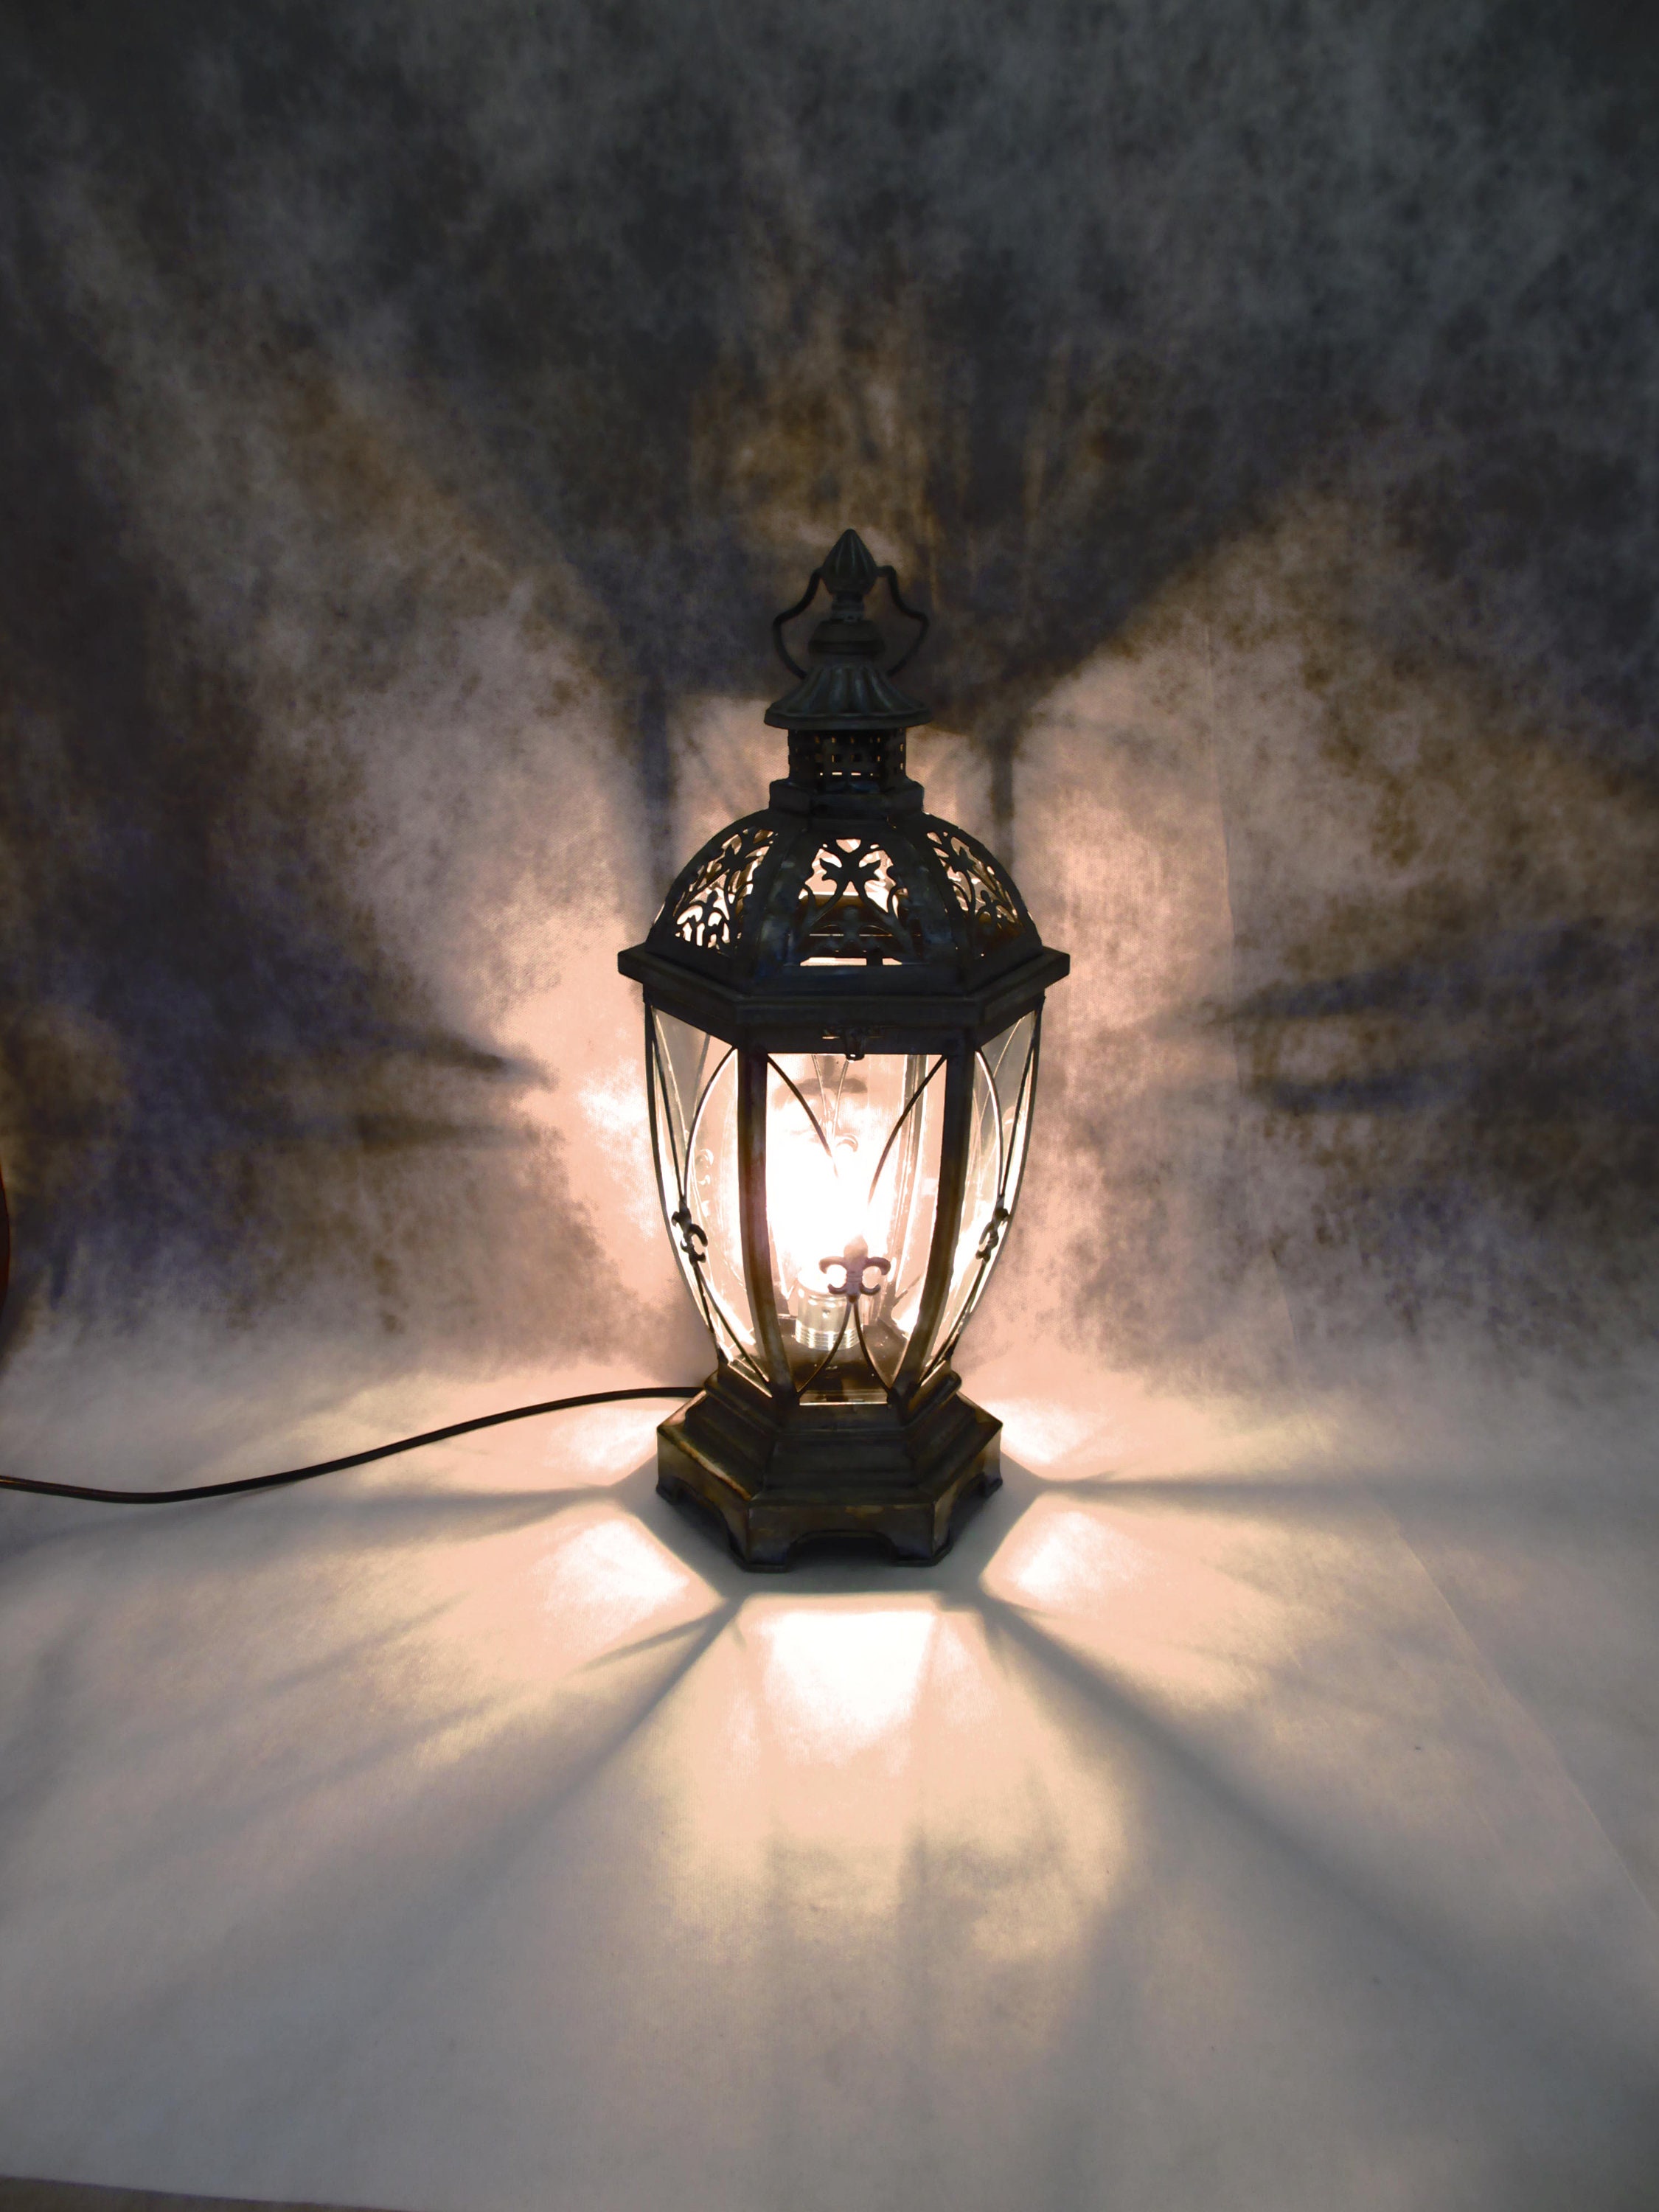 Tischlampe Keramik H26cm Weiß Rund Licht Lampe Nachtlampe Shabby Chic  Landhaus